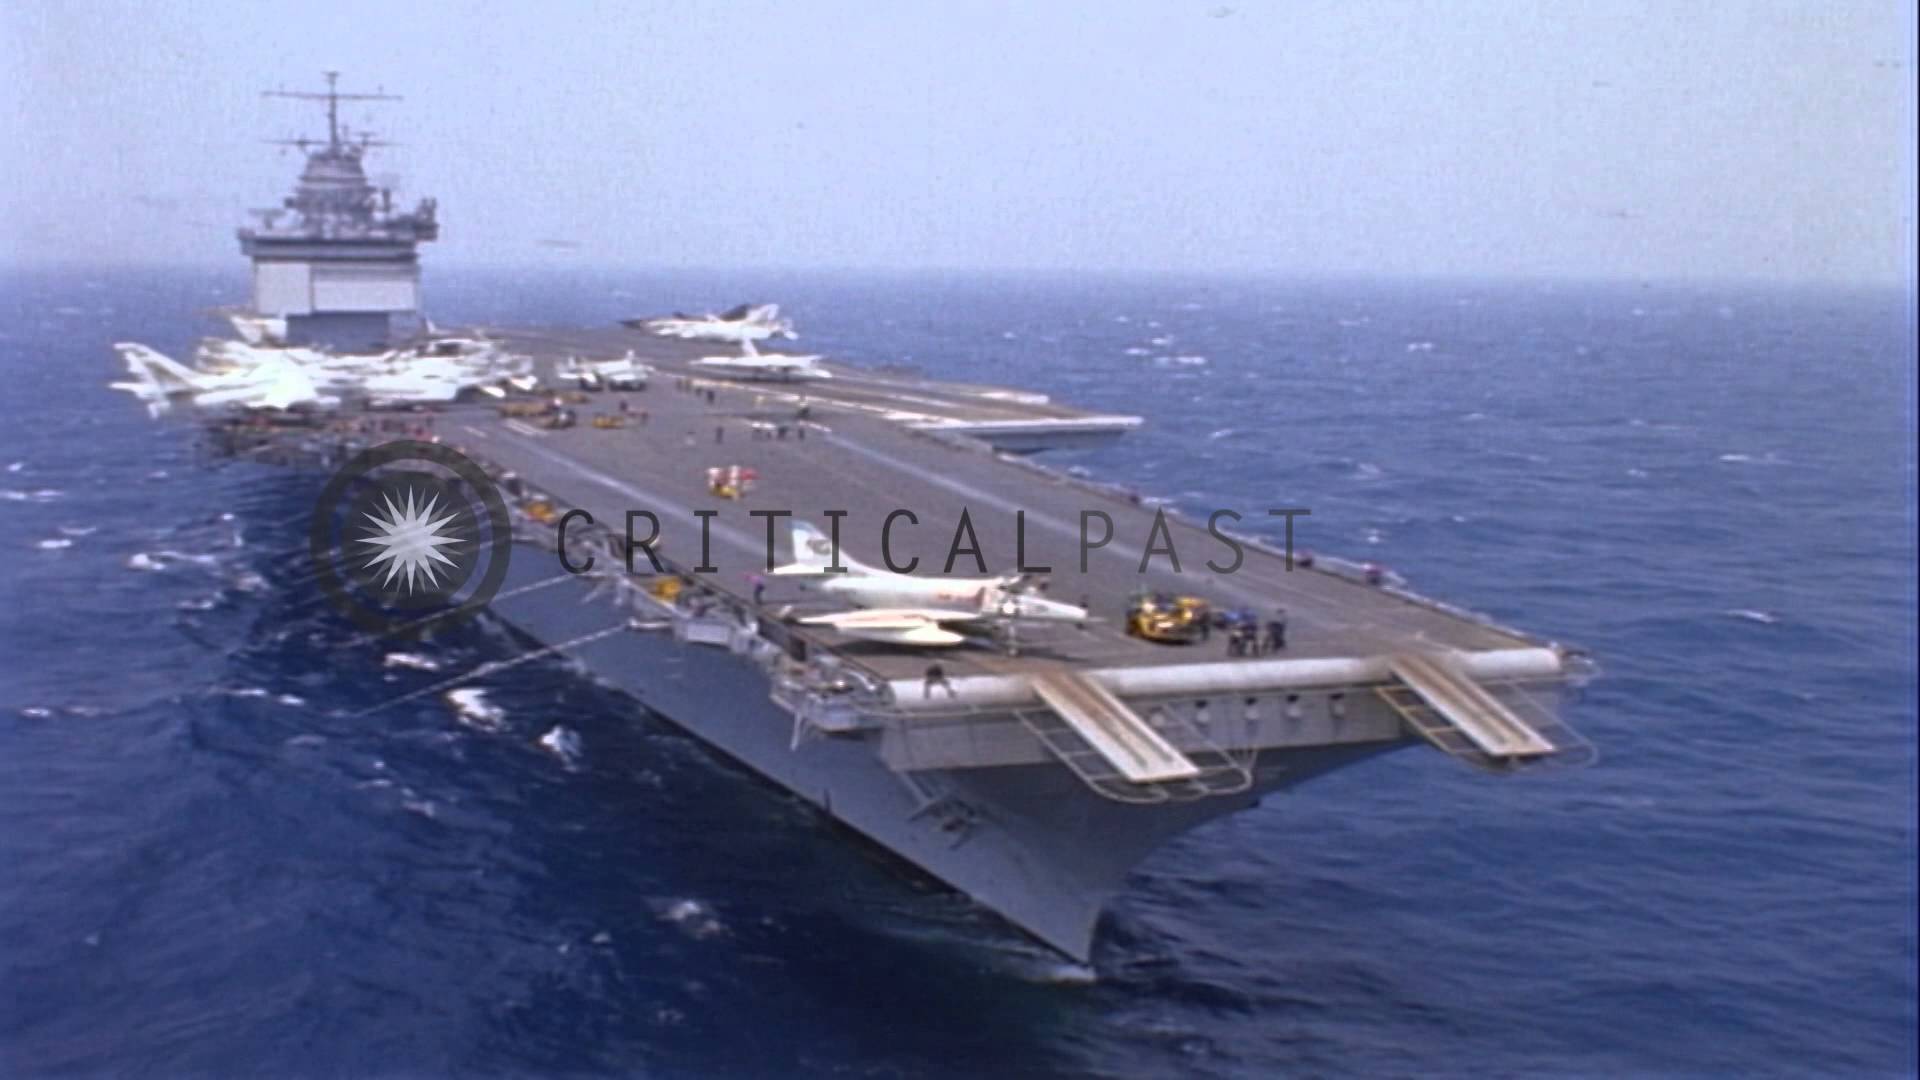 Amazing USS Enterprise (CVN-65) Pictures & Backgrounds